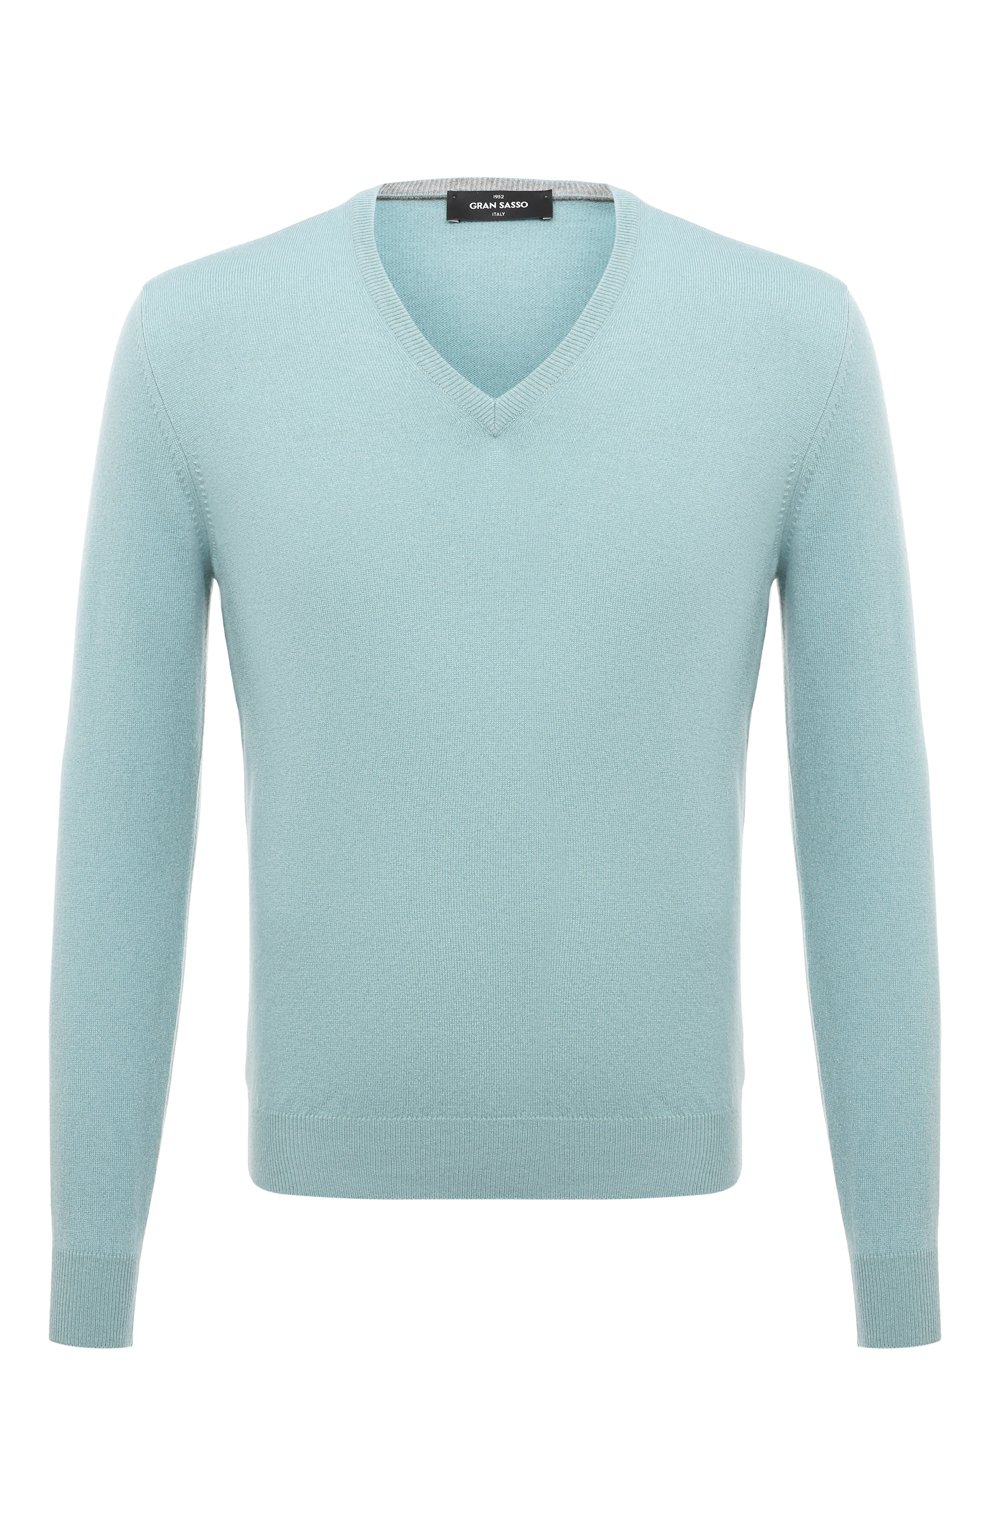 Кашемировый пуловер Gran Sasso 55115/15590, цвет голубой, размер 48 55115/15590 - фото 1